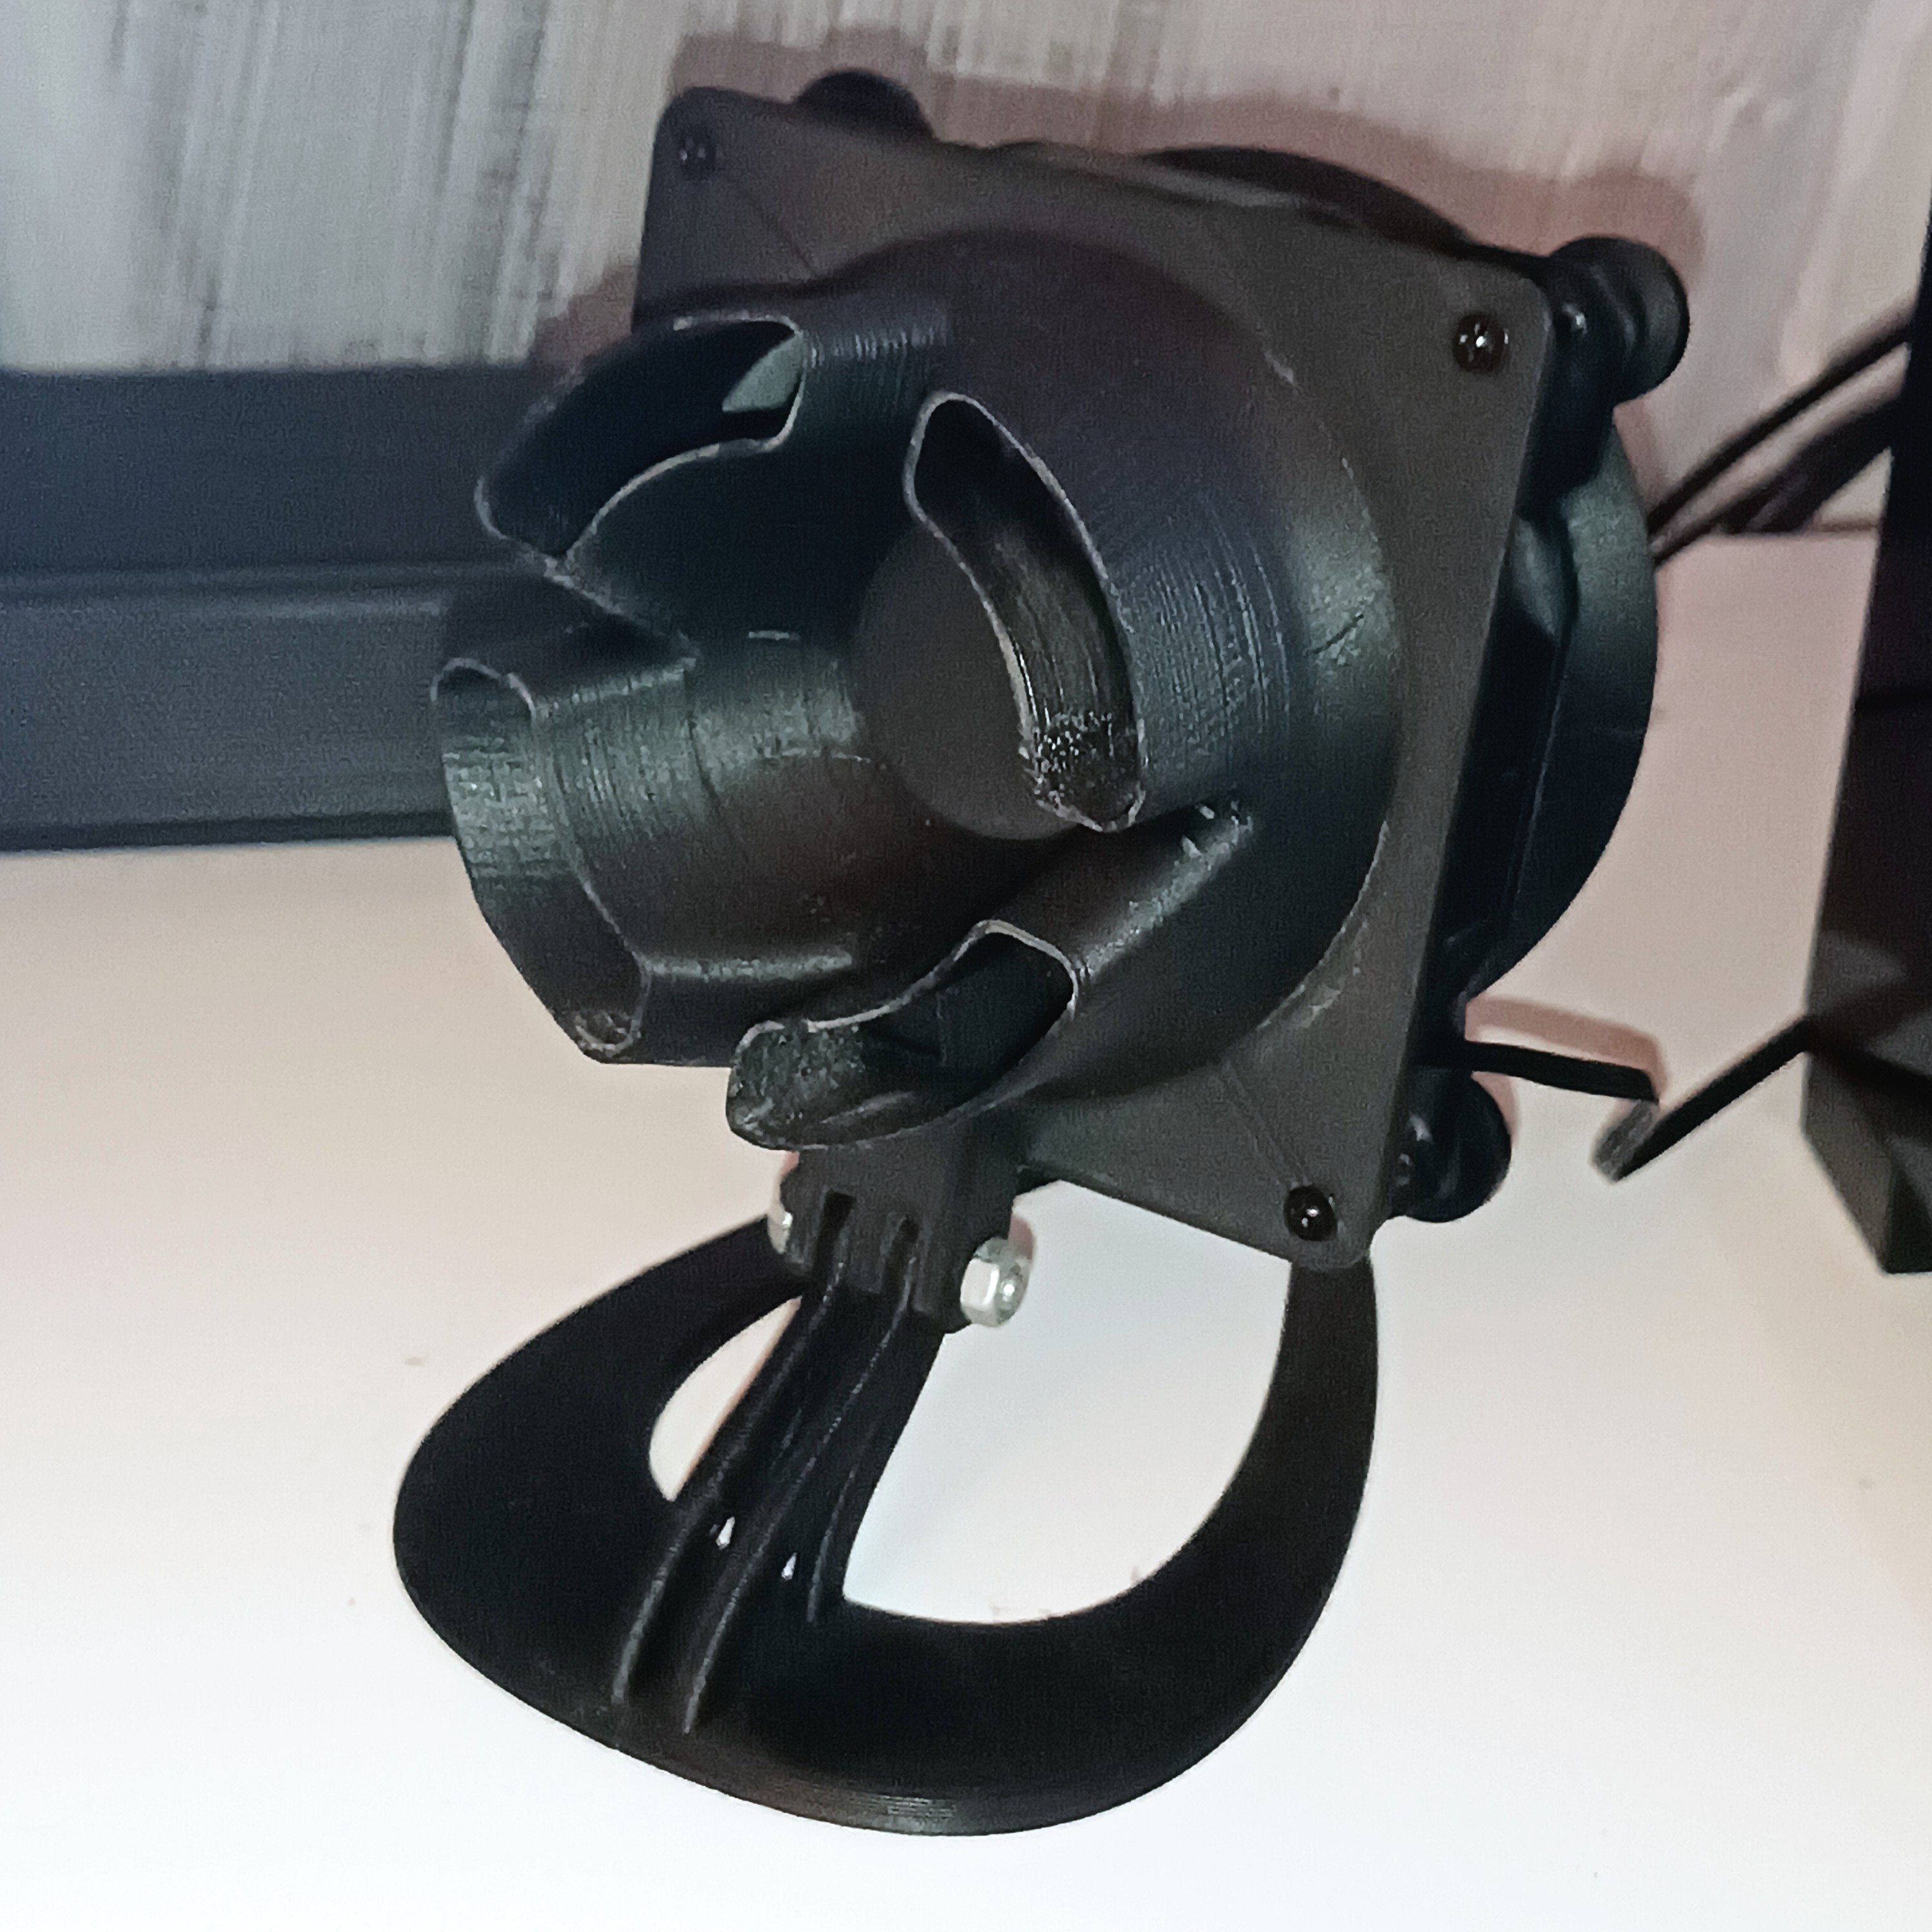 Noctua Style Desk Fan (120mm)